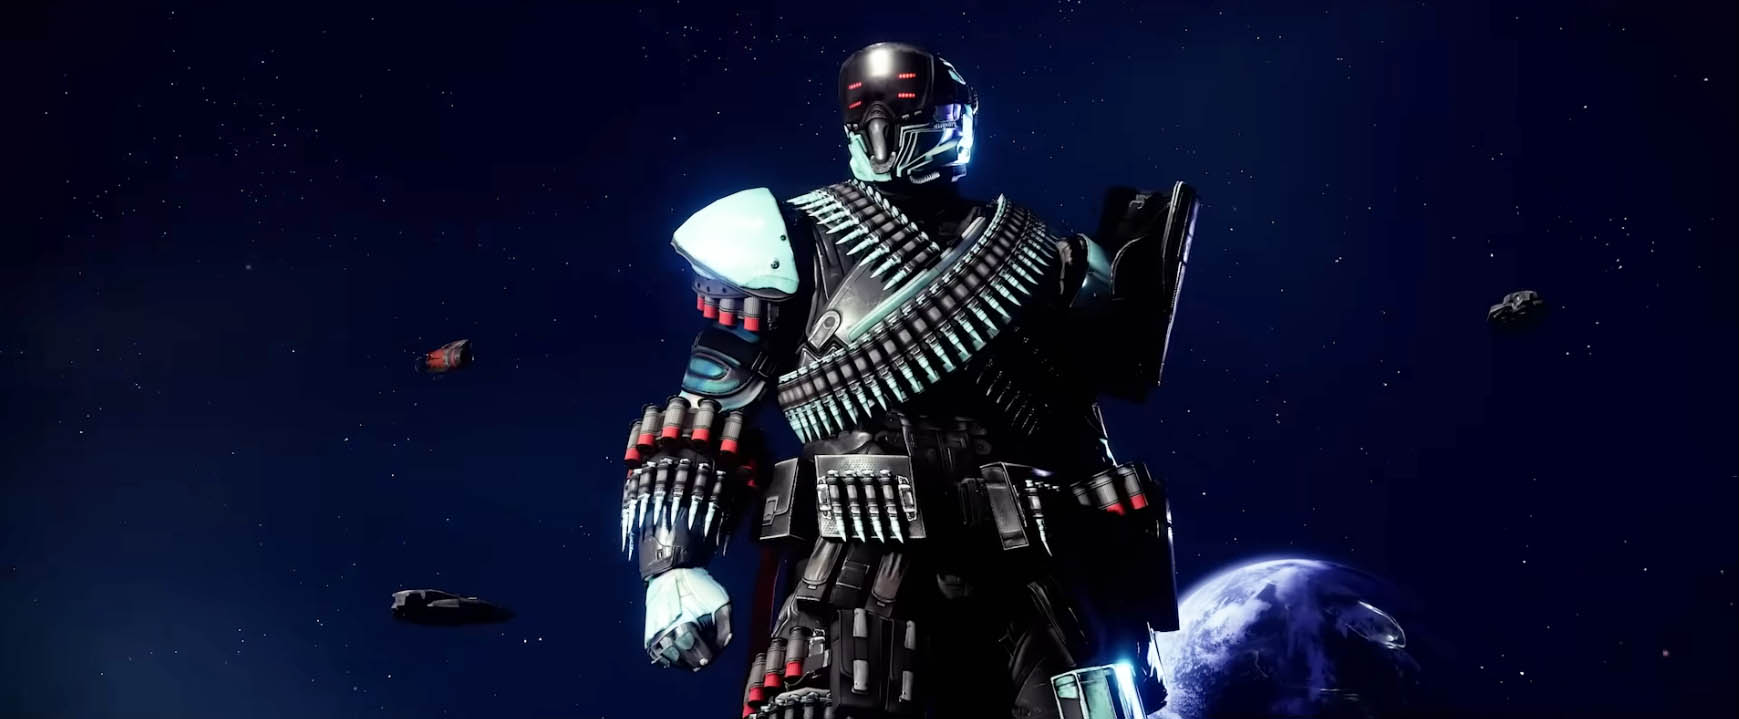 Destiny 2 – опубликован релизный трейлер дополнения Lightfall